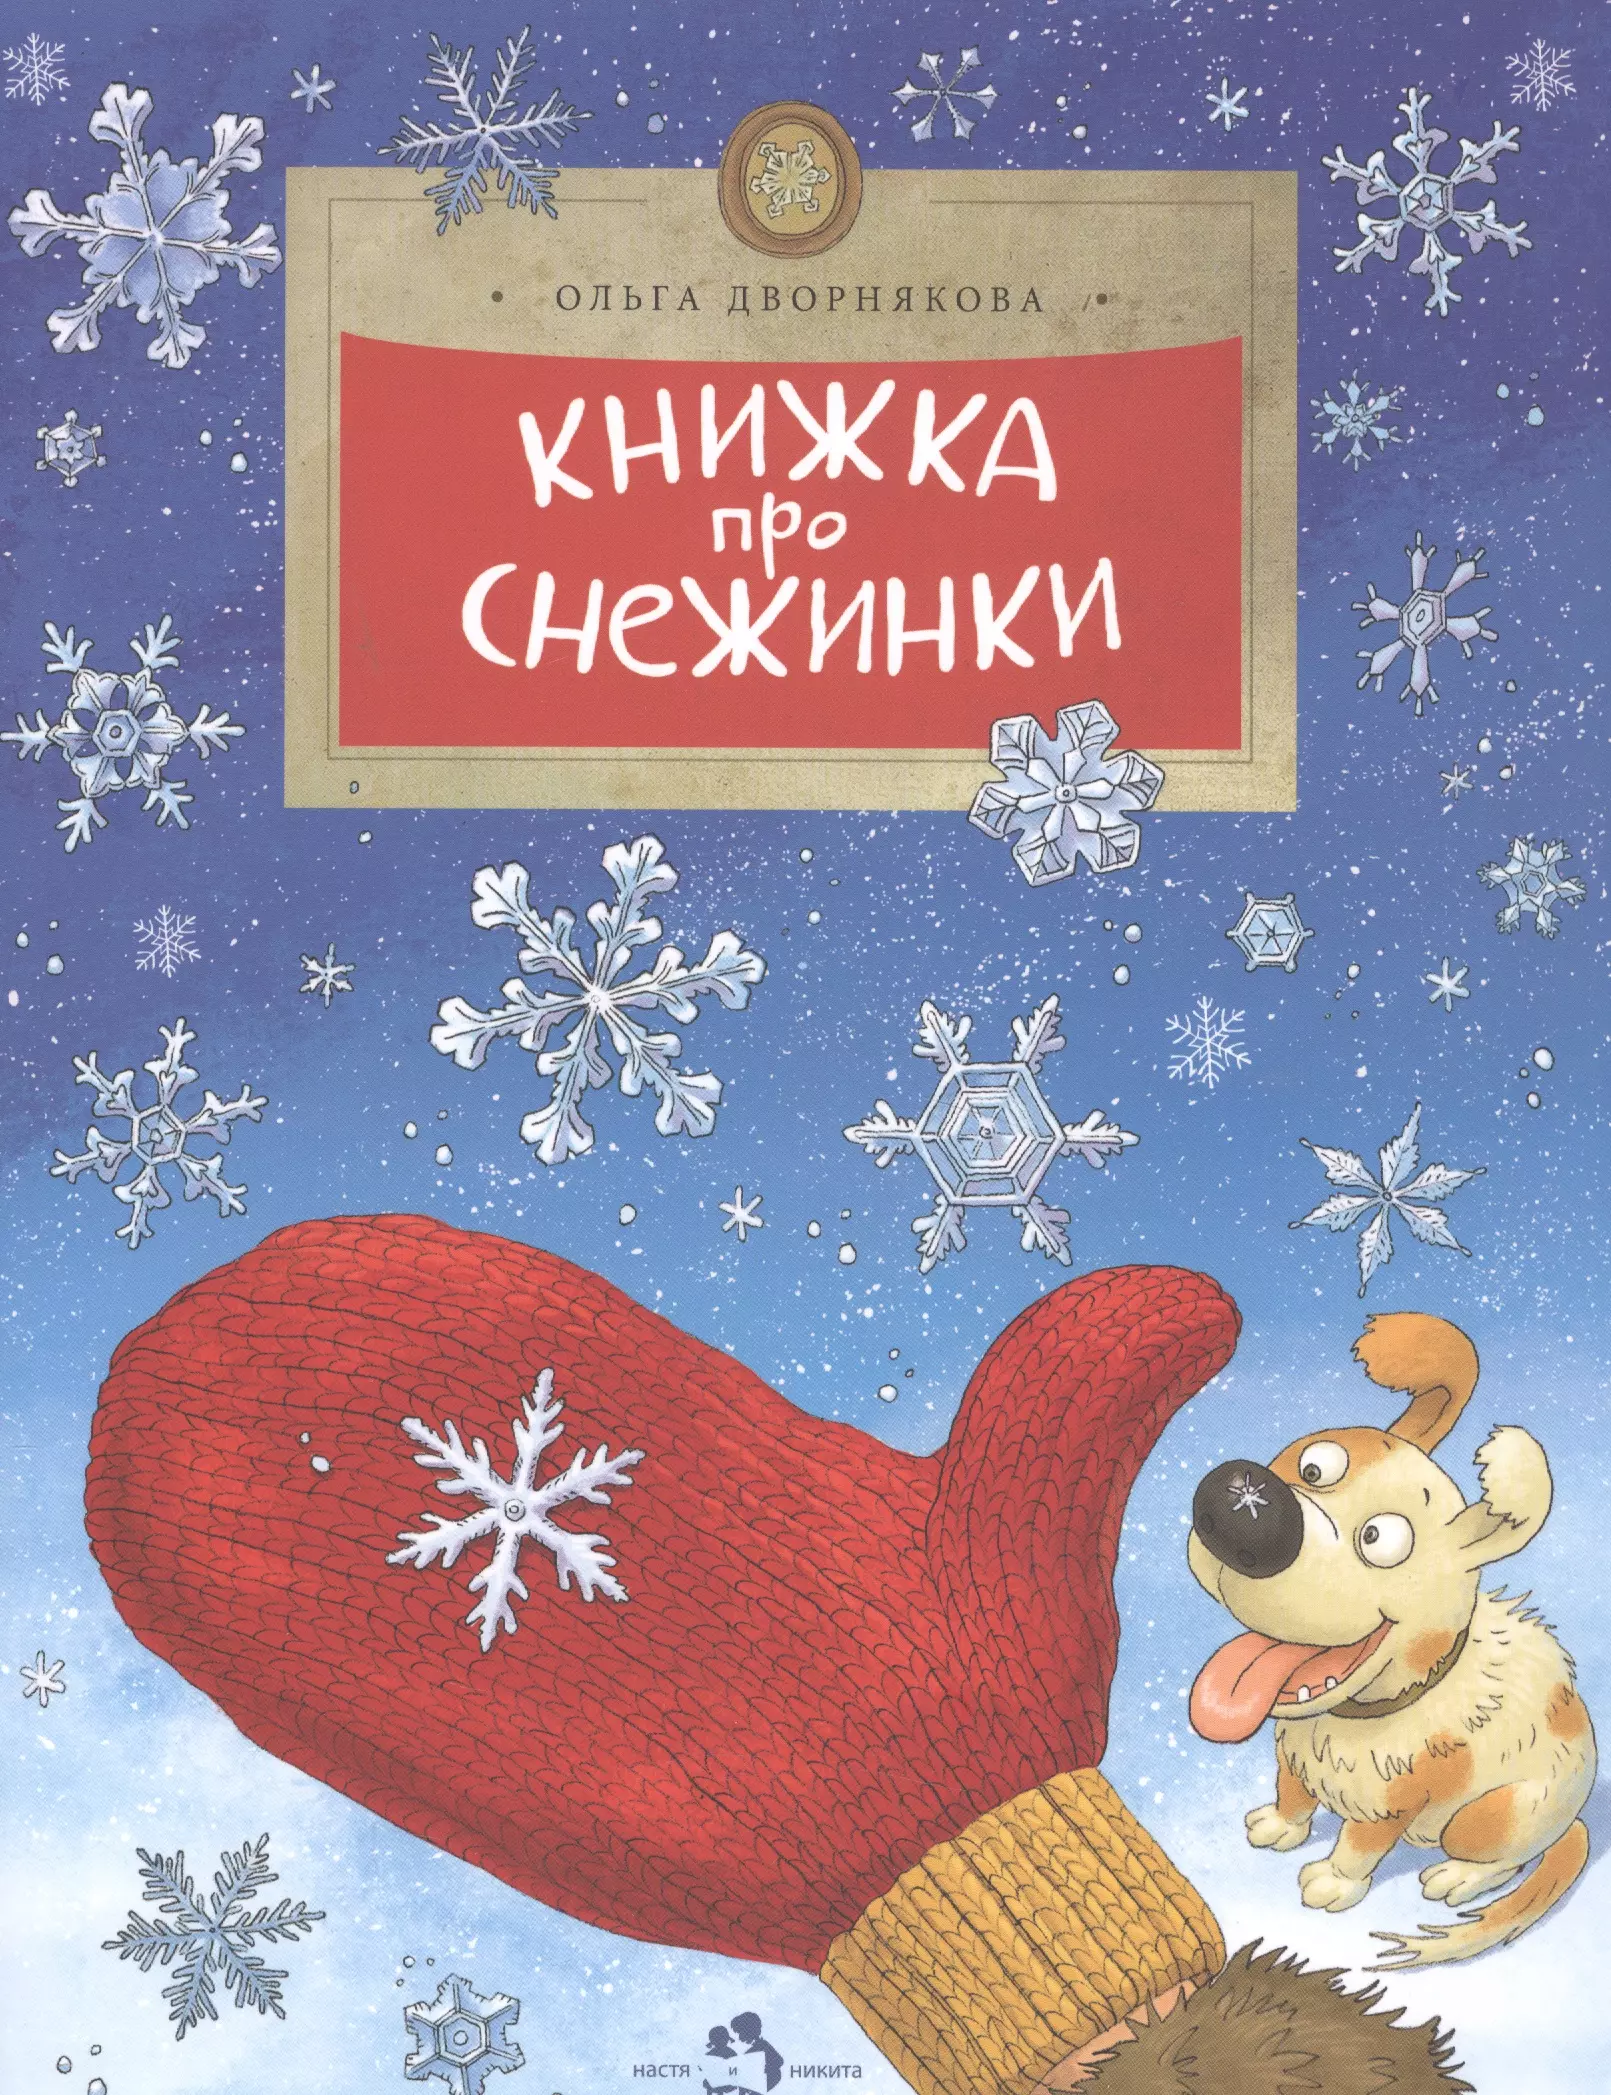 Дворнякова Ольга Викторовна Книжка про снежинки (6+)